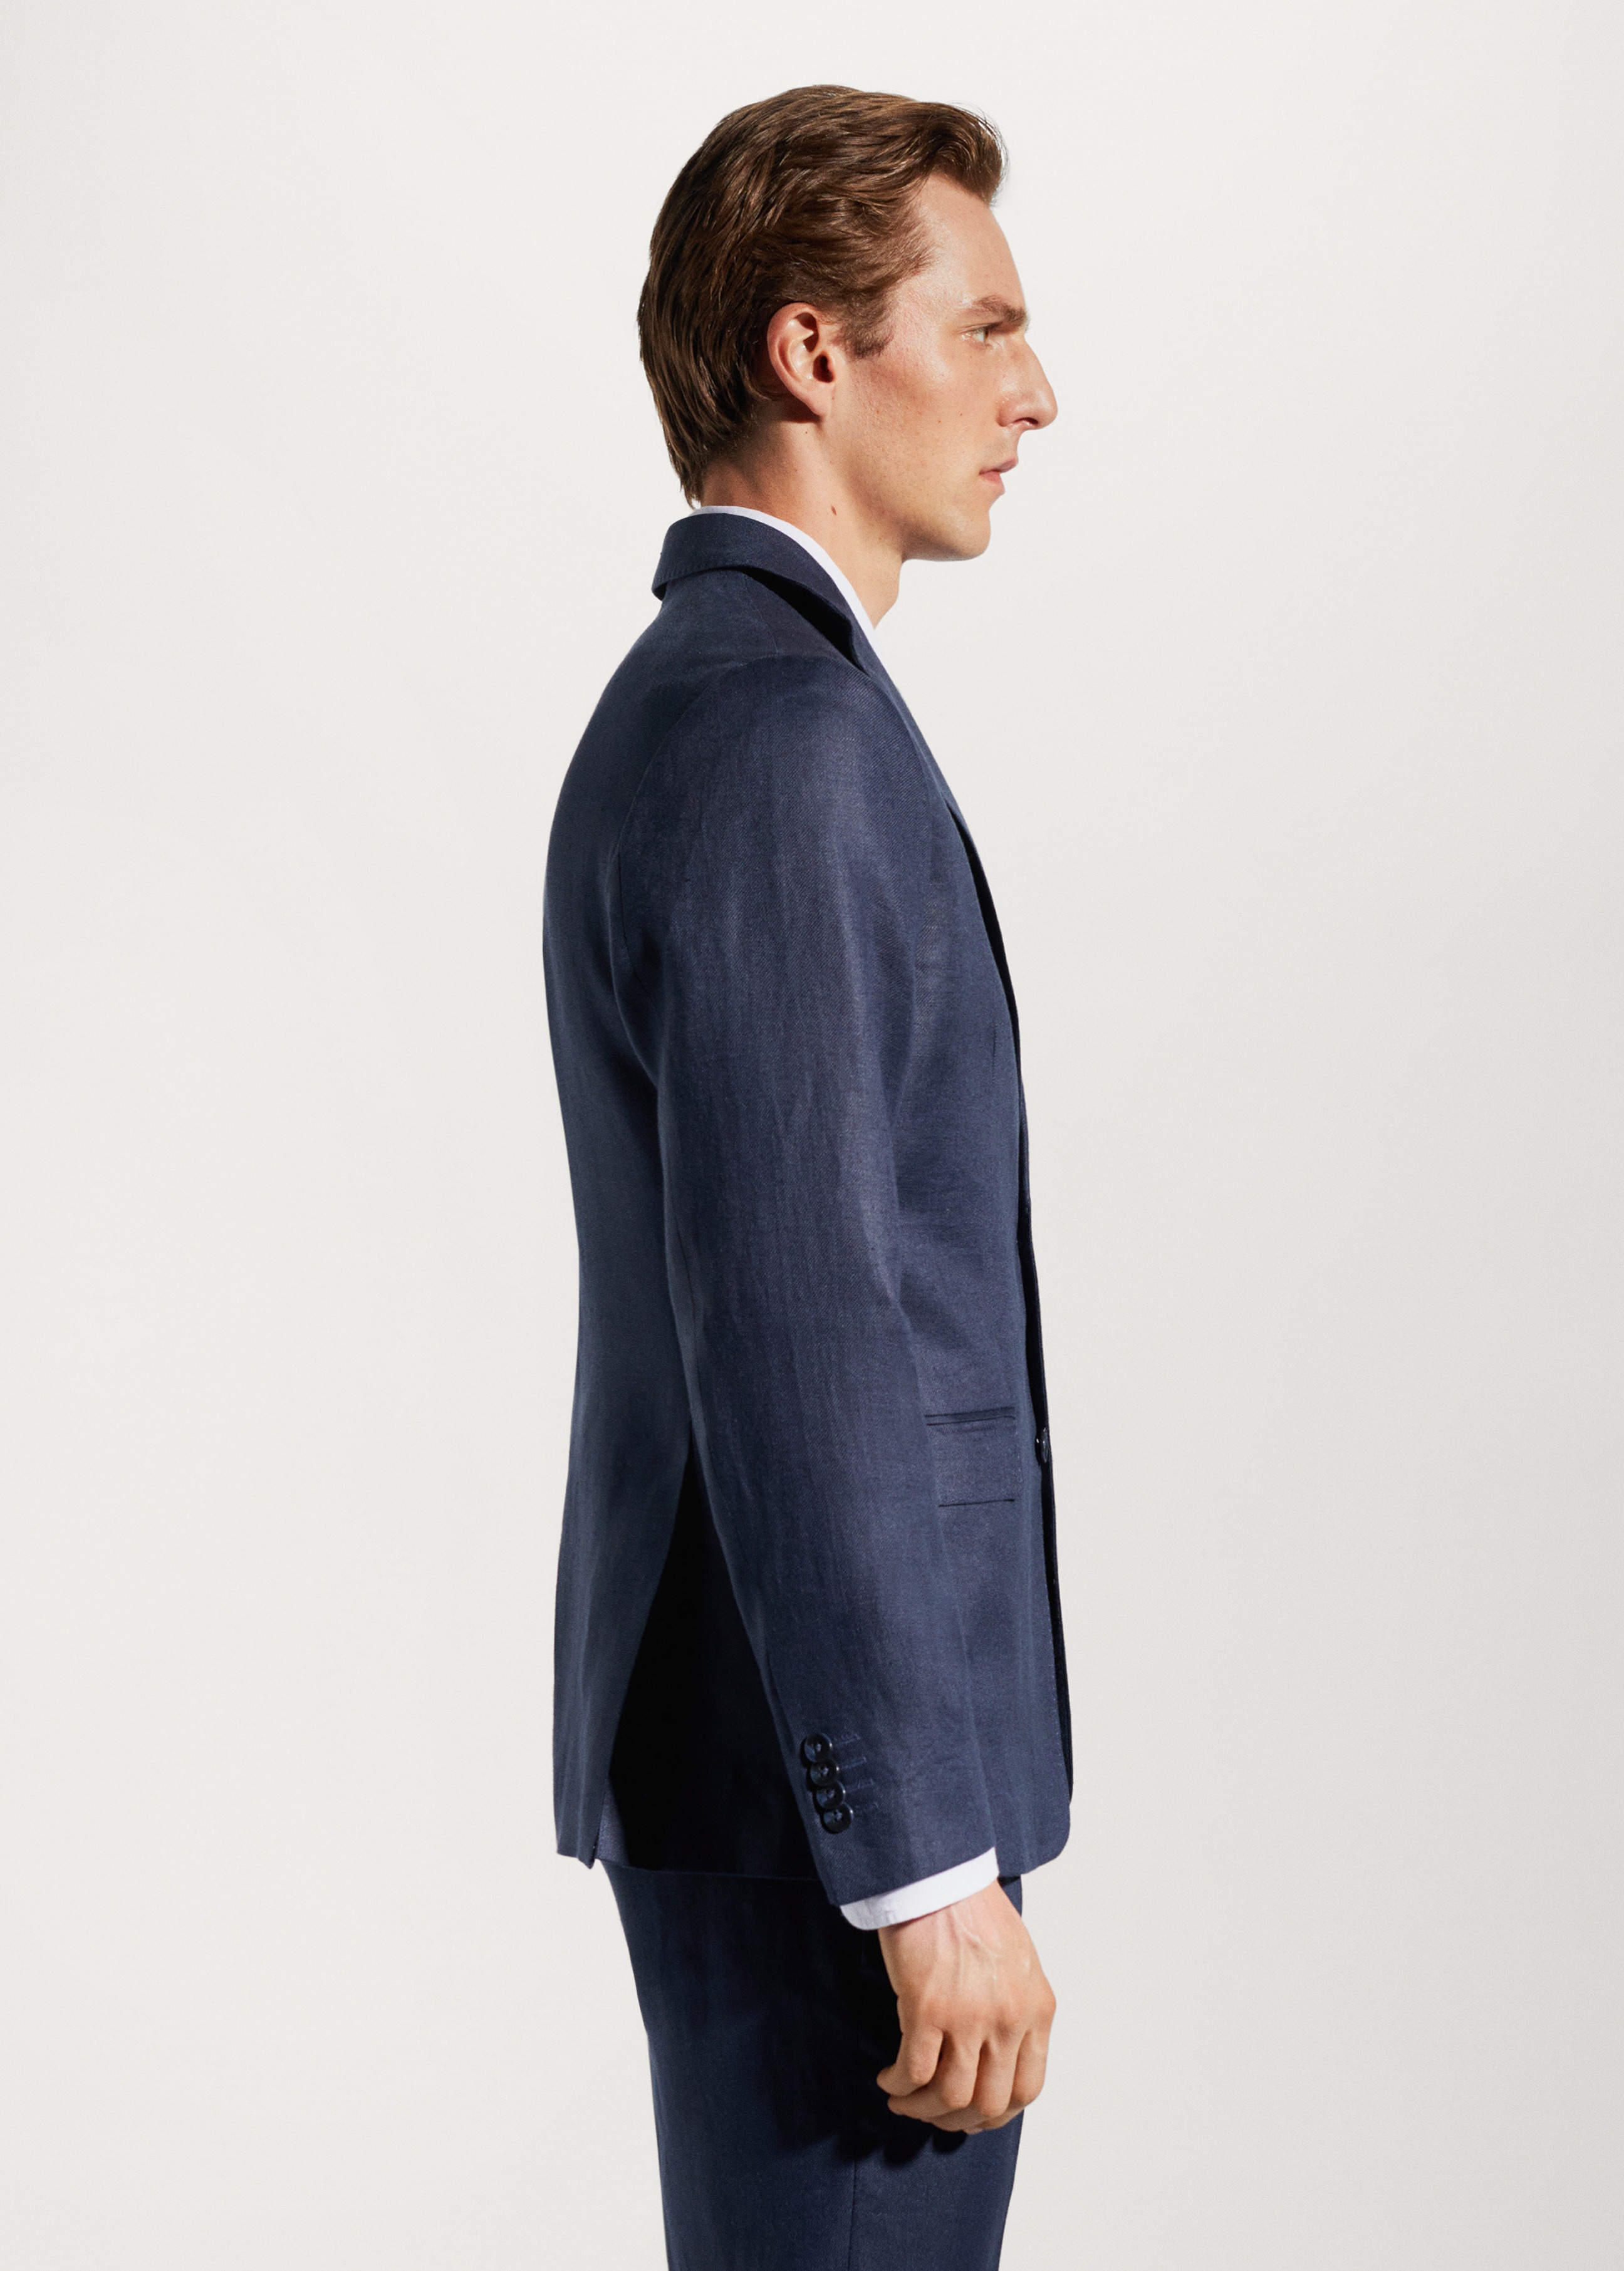 100% linen suit blazer - Details of the article 2